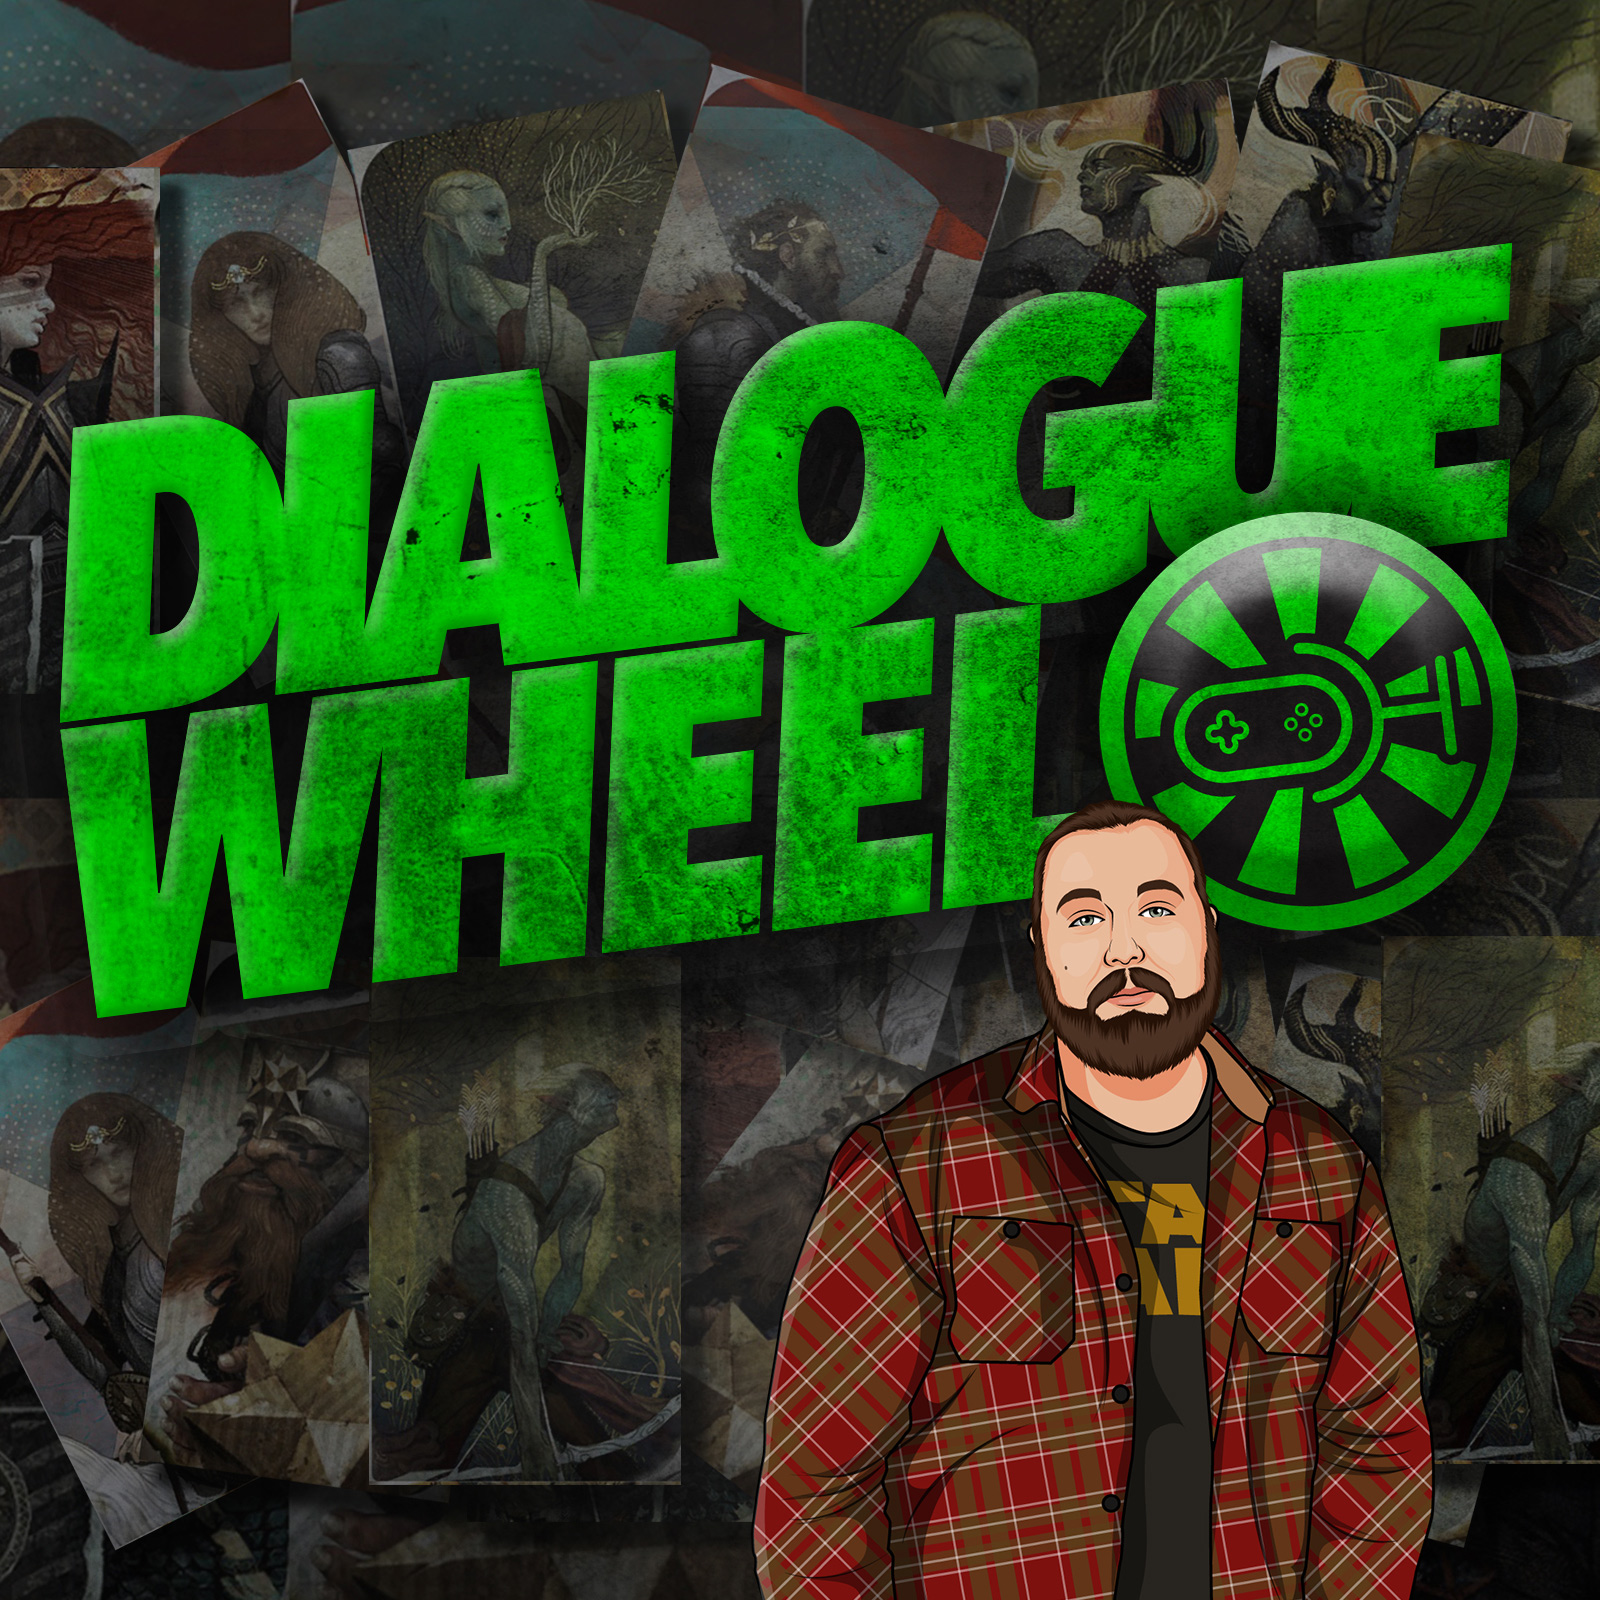 Dialogue Wheel